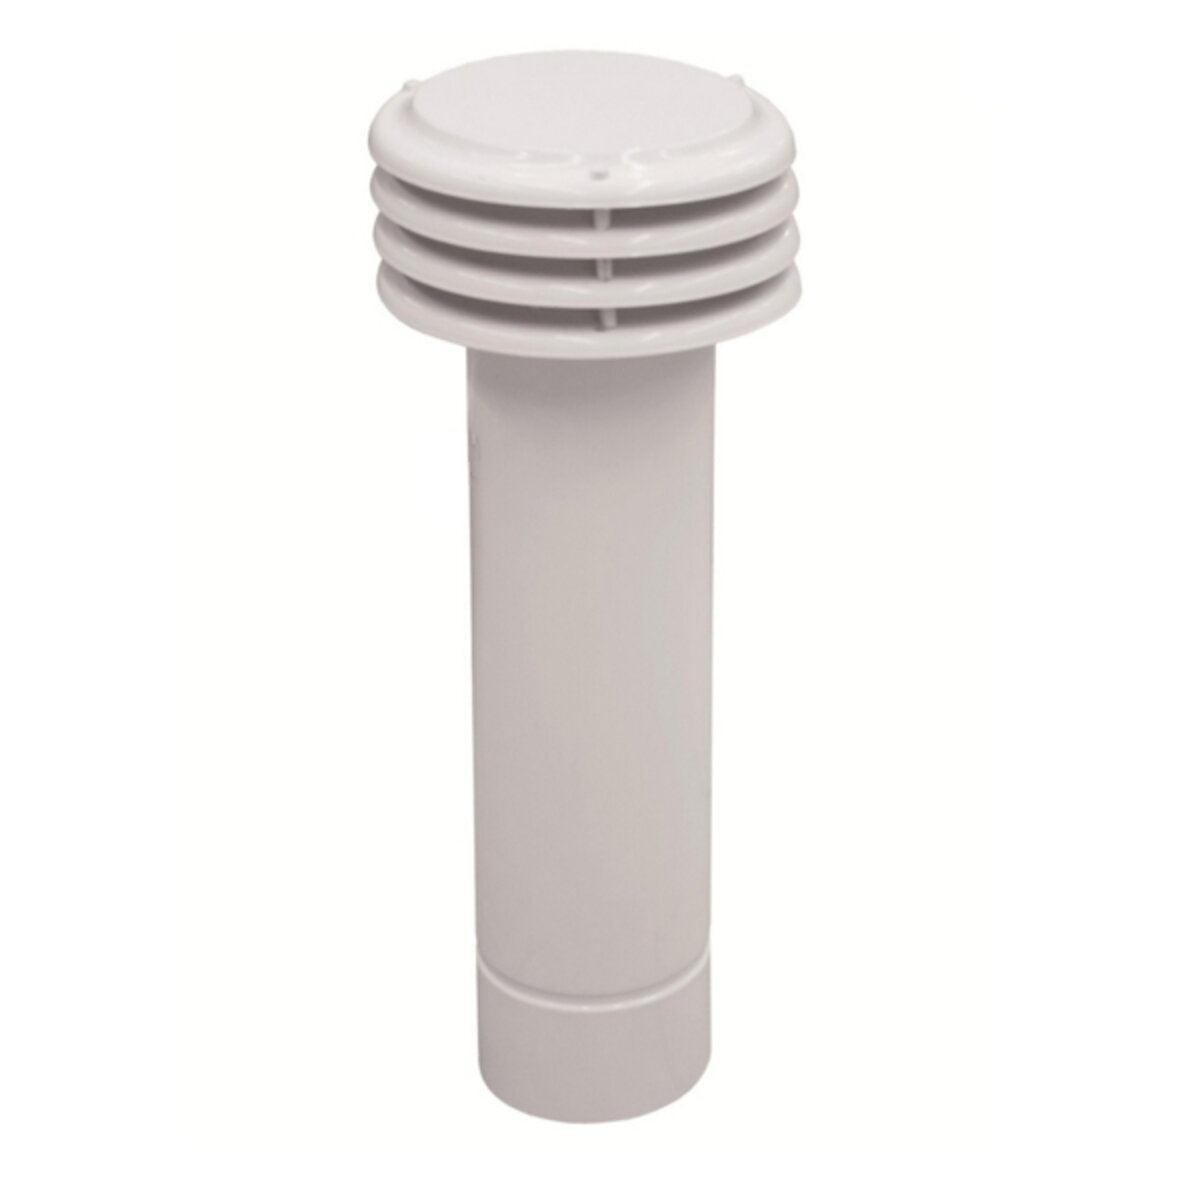 Durchmesser Rauchabzugsrohr 110 mm. universell für Gaswarmwasserbereiter mit offener Kammer